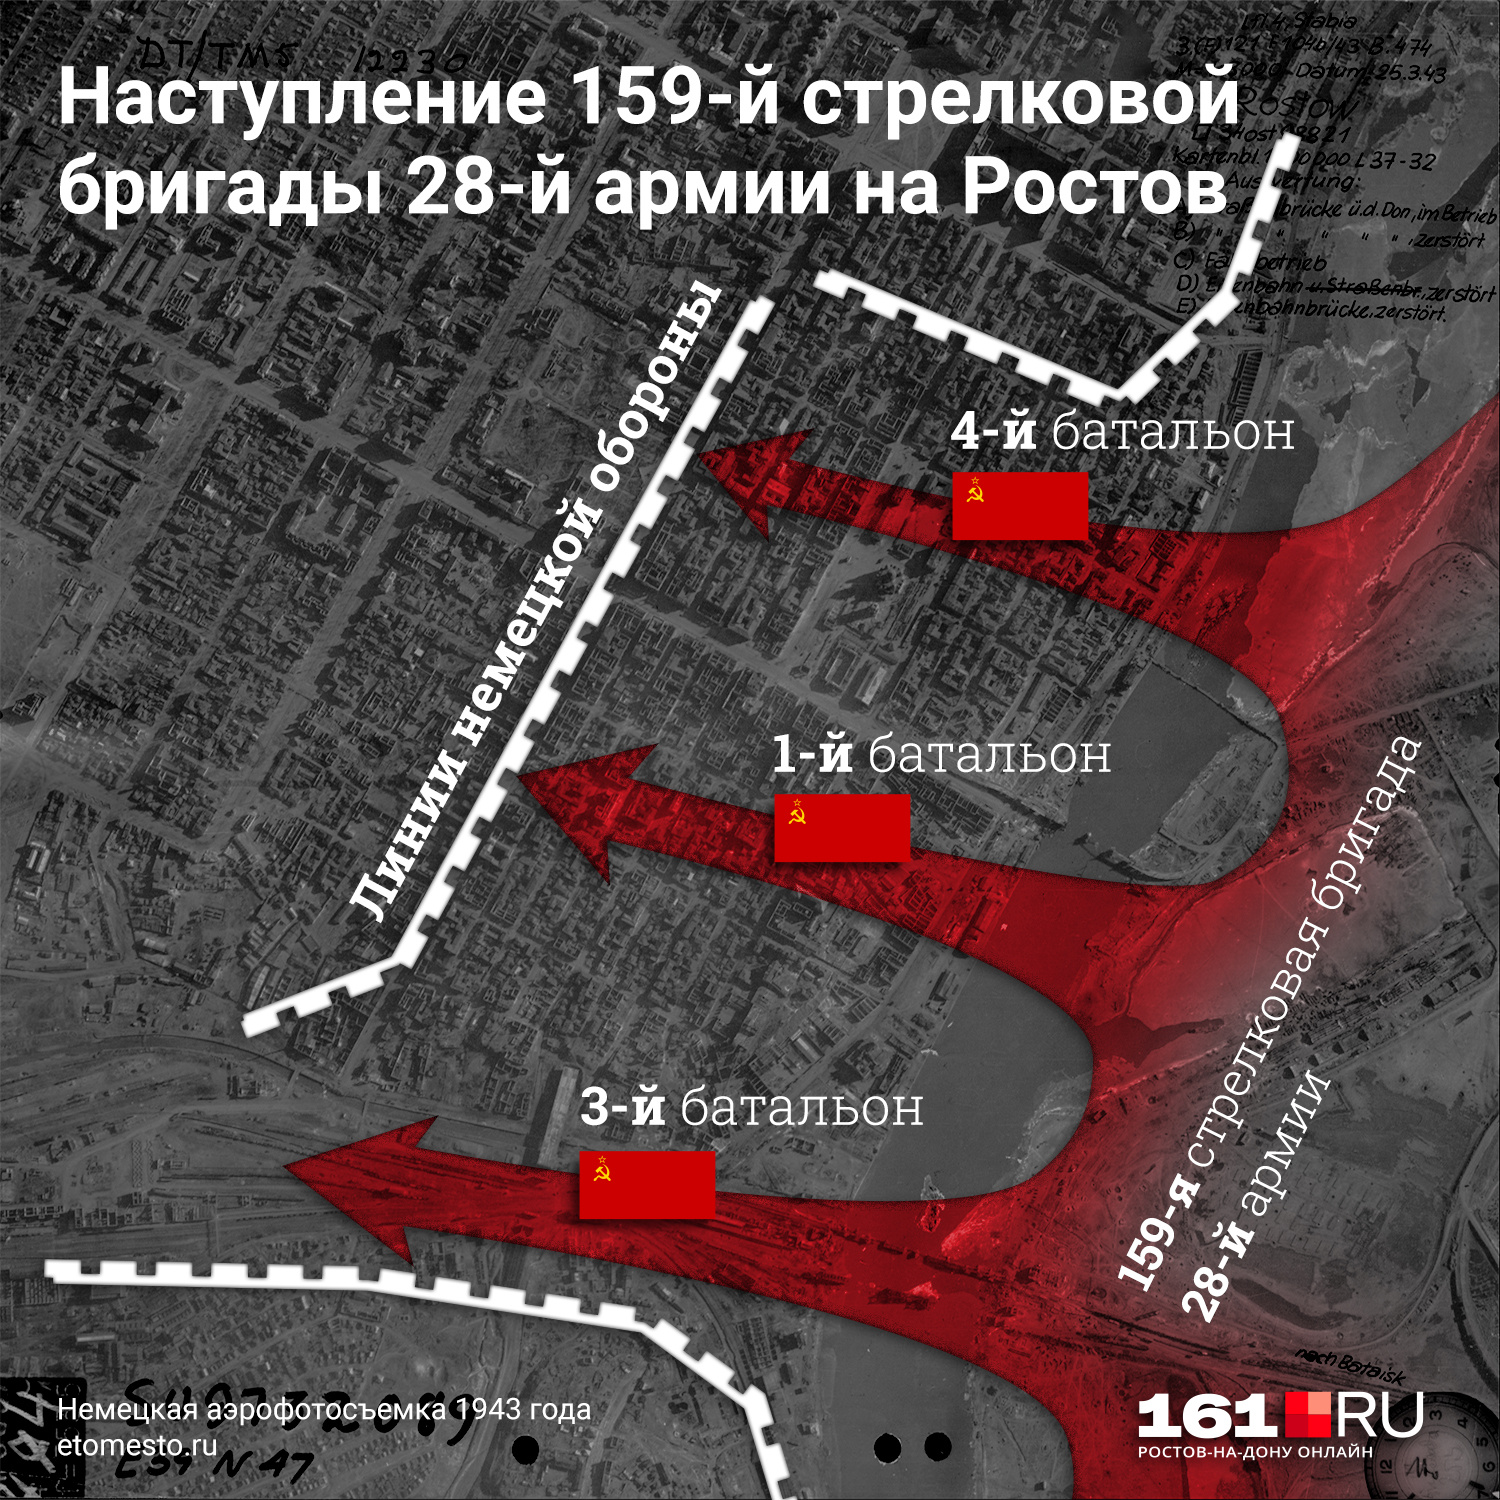 Так выглядел примерный план наступления в город 159-й стрелковой бригады